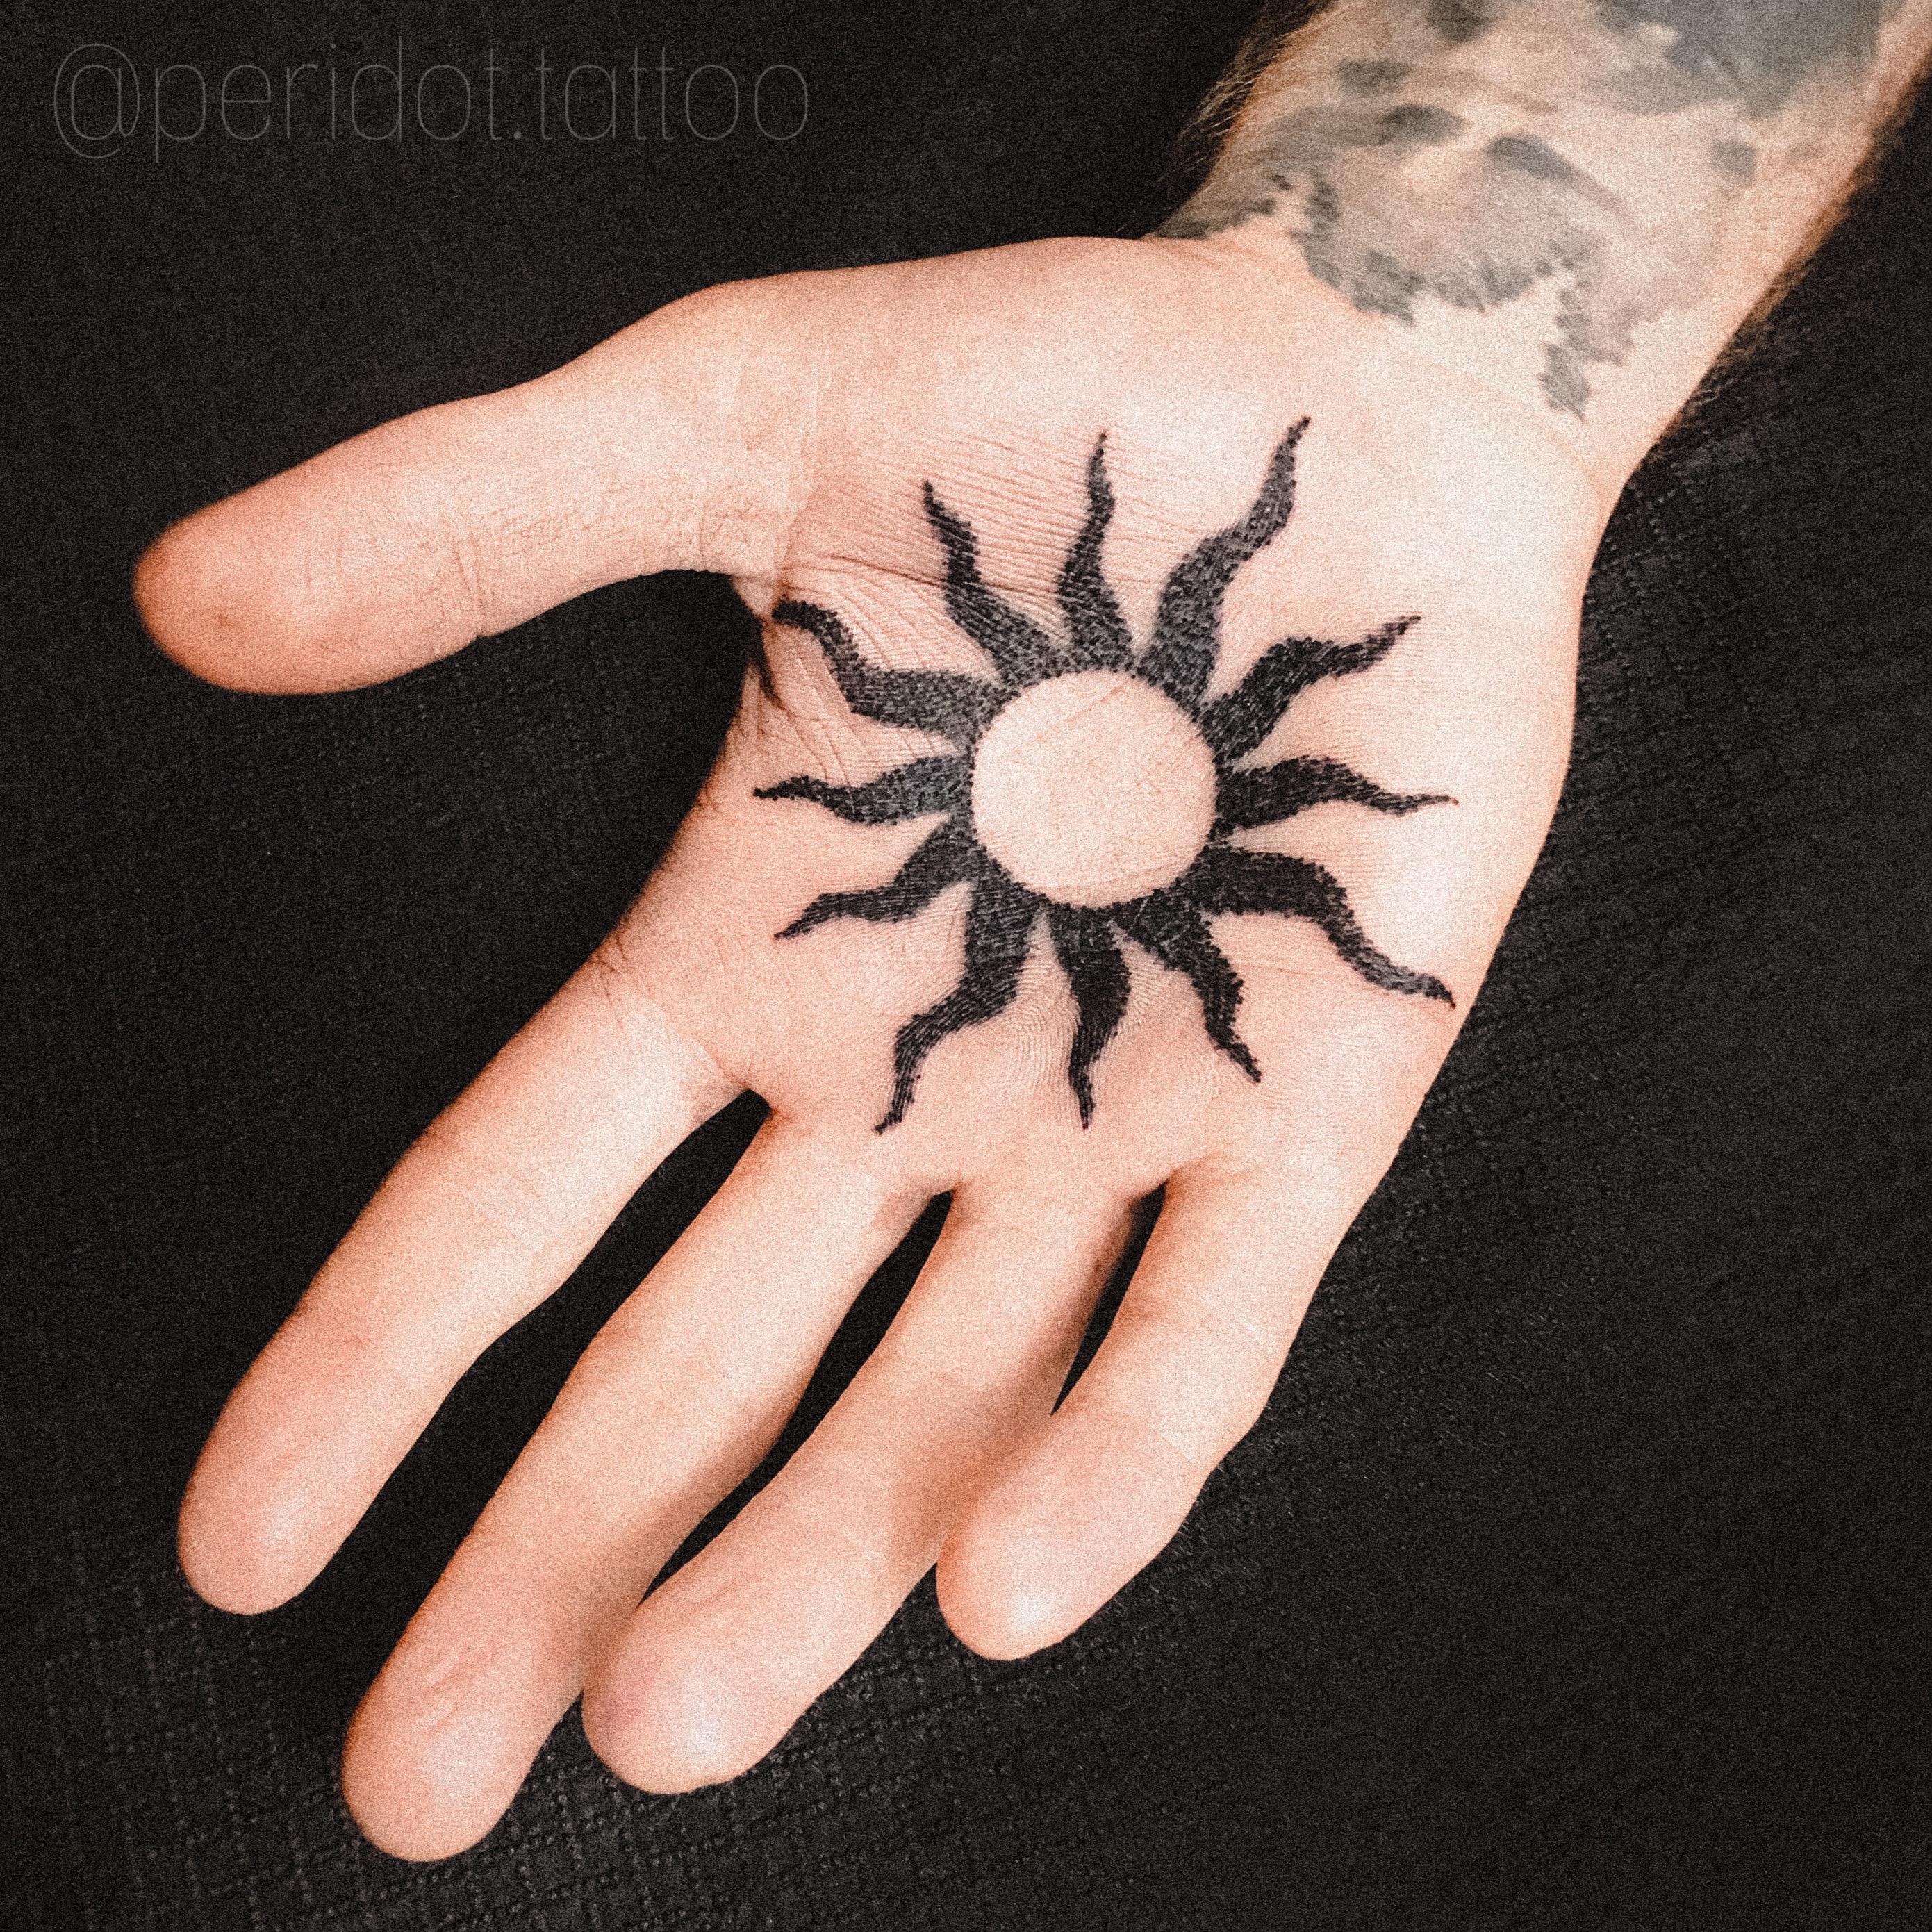 Inksearch tattoo PERIDOT TATTOO